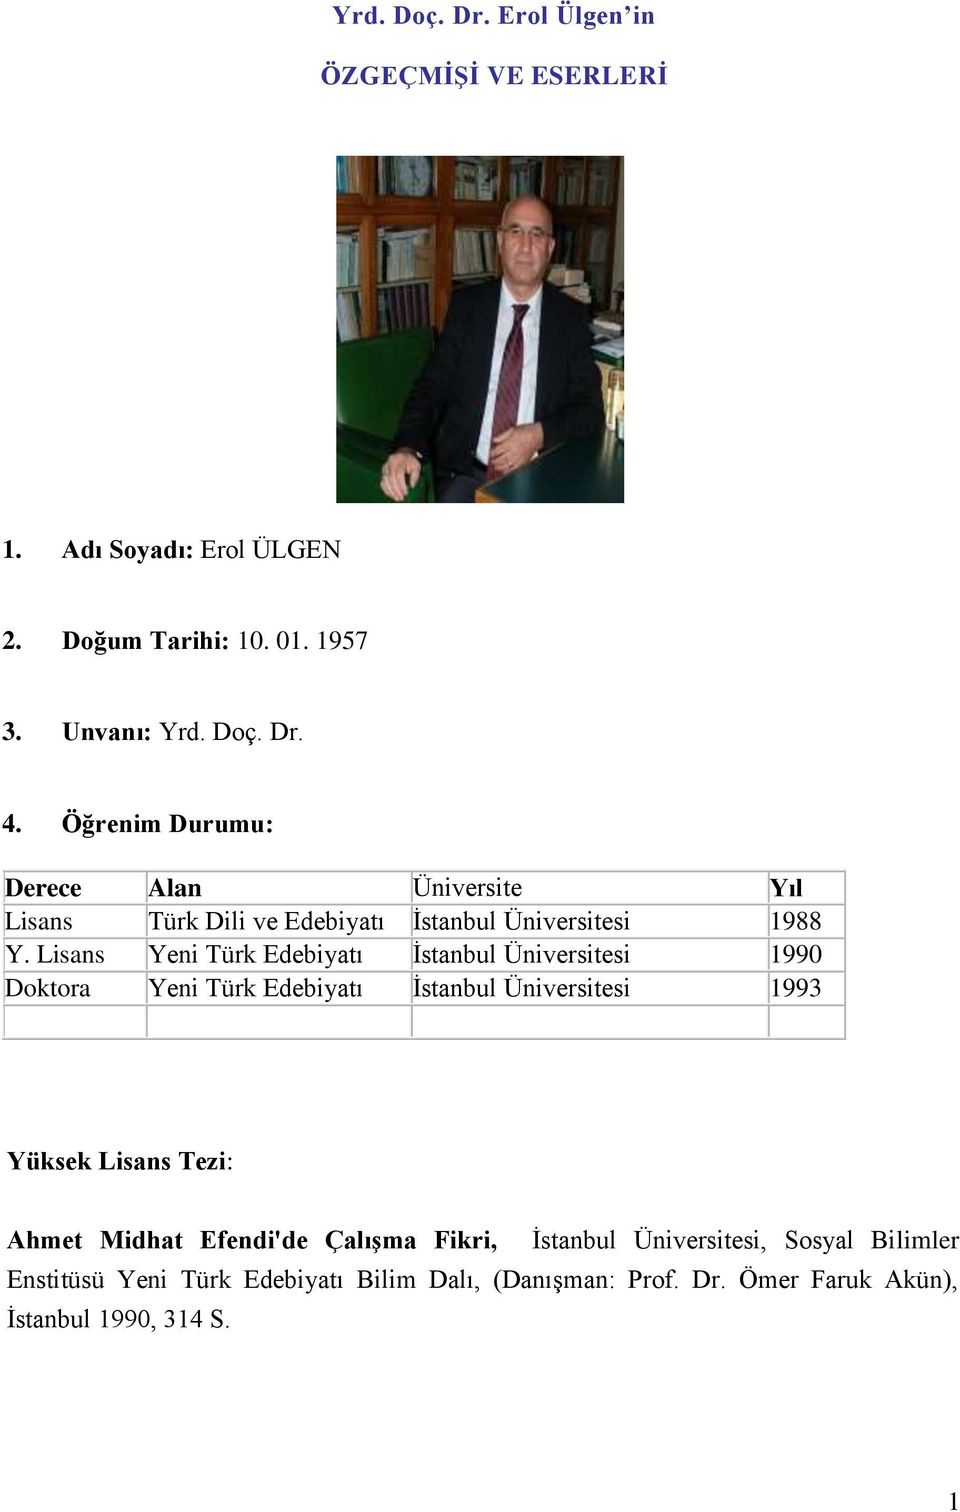 Lisans Yeni Türk Edebiyatı İstanbul Üniversitesi 1990 Doktora Yeni Türk Edebiyatı İstanbul Üniversitesi 1993 Yüksek Lisans Tezi: Ahmet